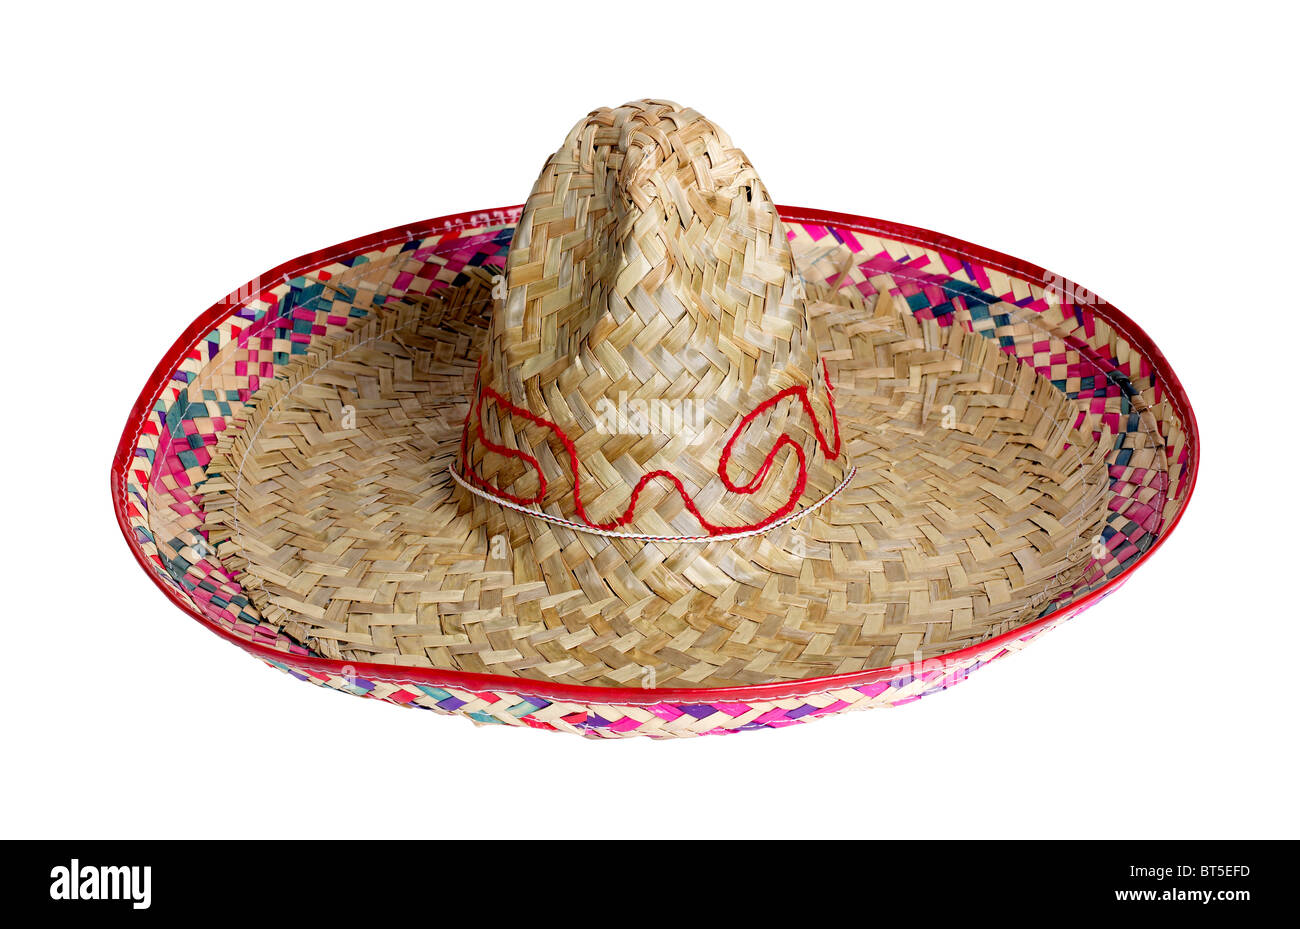 Chapeau de paille mexicain Mexique Sombrero chapeau ombre danse protection solaire accessoire célébrer fête Banque D'Images